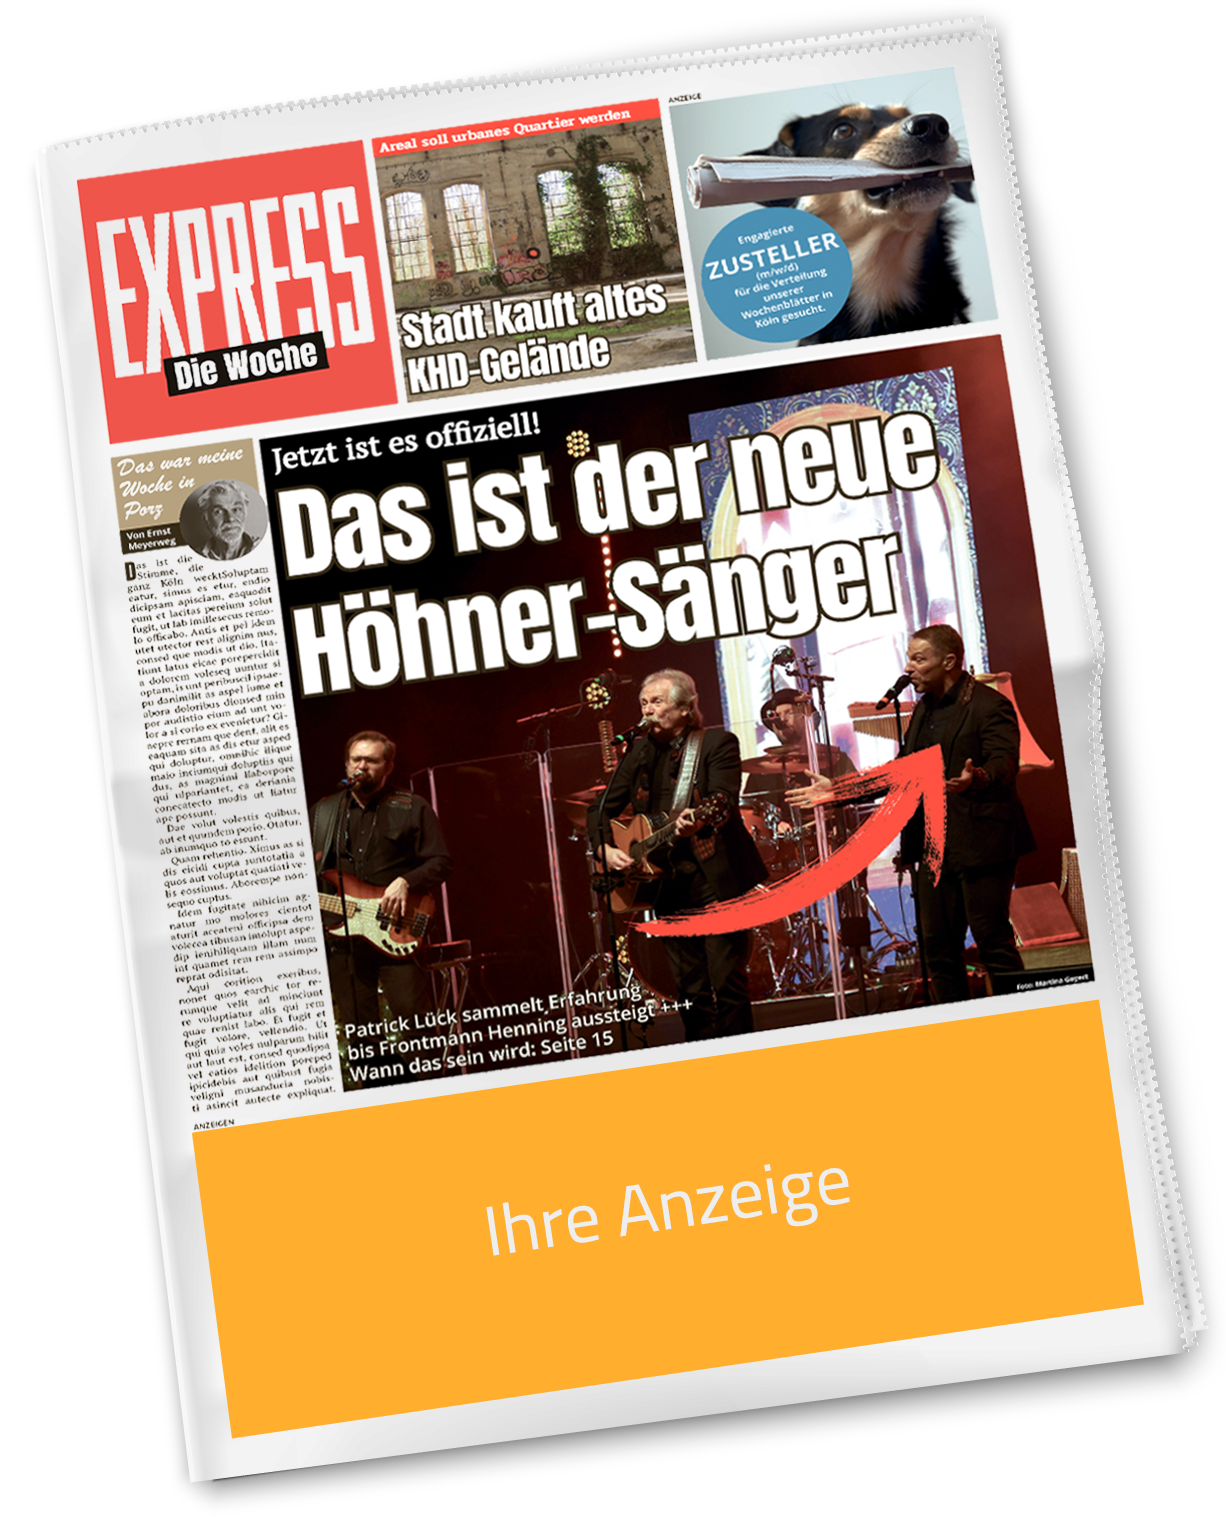 EXPRESS – Die Woche, Amsterdamer Str. 192 in Köln